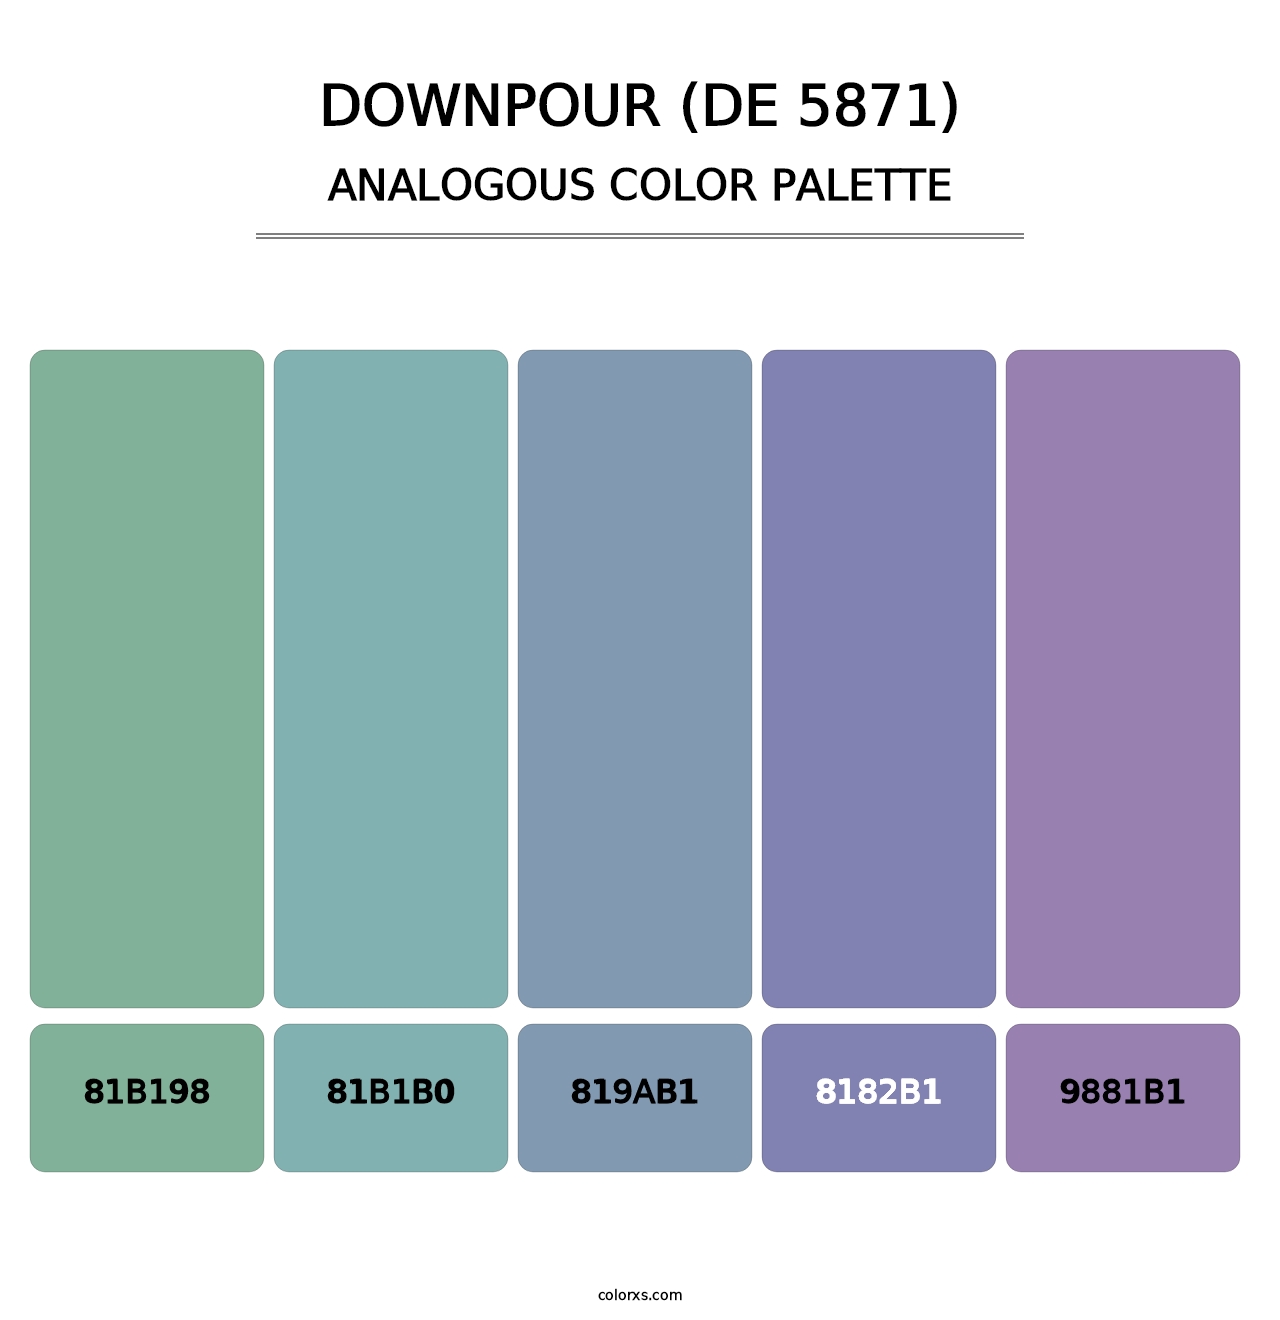 Downpour (DE 5871) - Analogous Color Palette